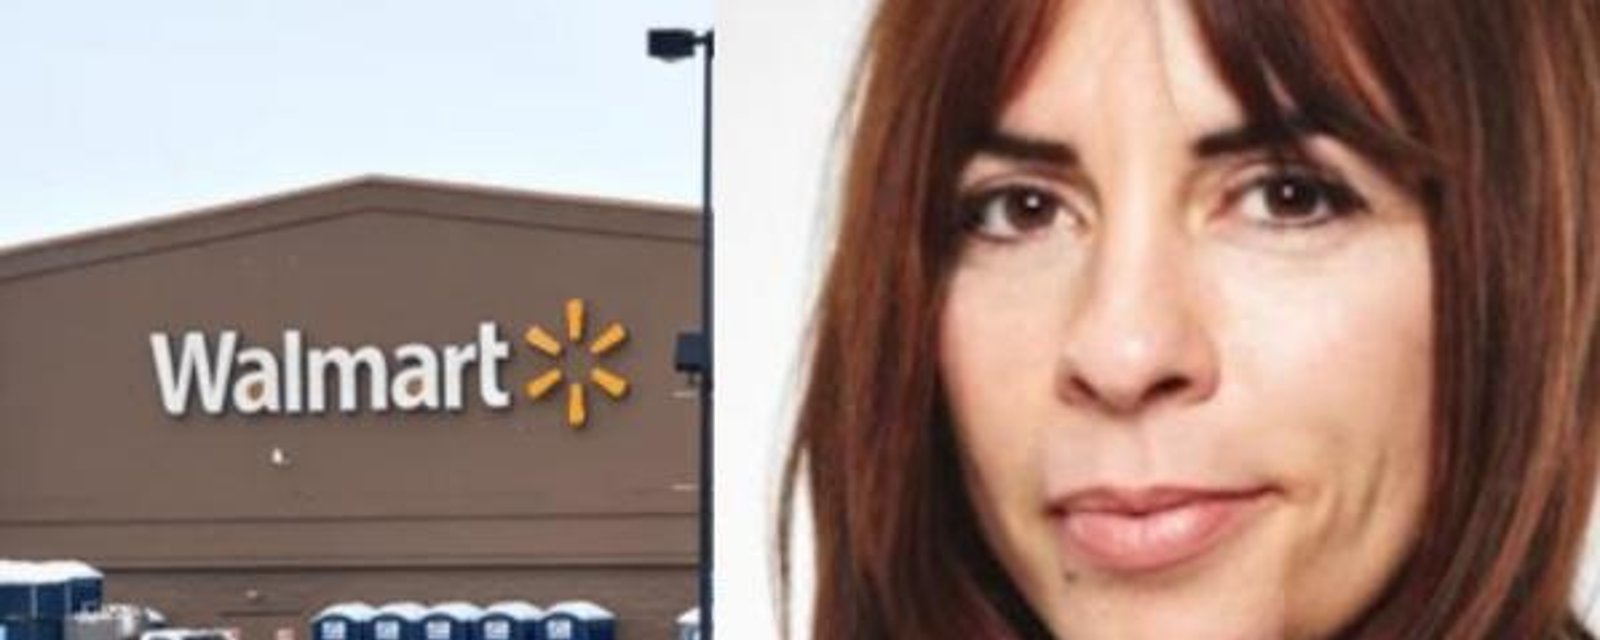 La chaîne Walmart se dissocie des propos anti-vaccins proférés par Anne Casabonne